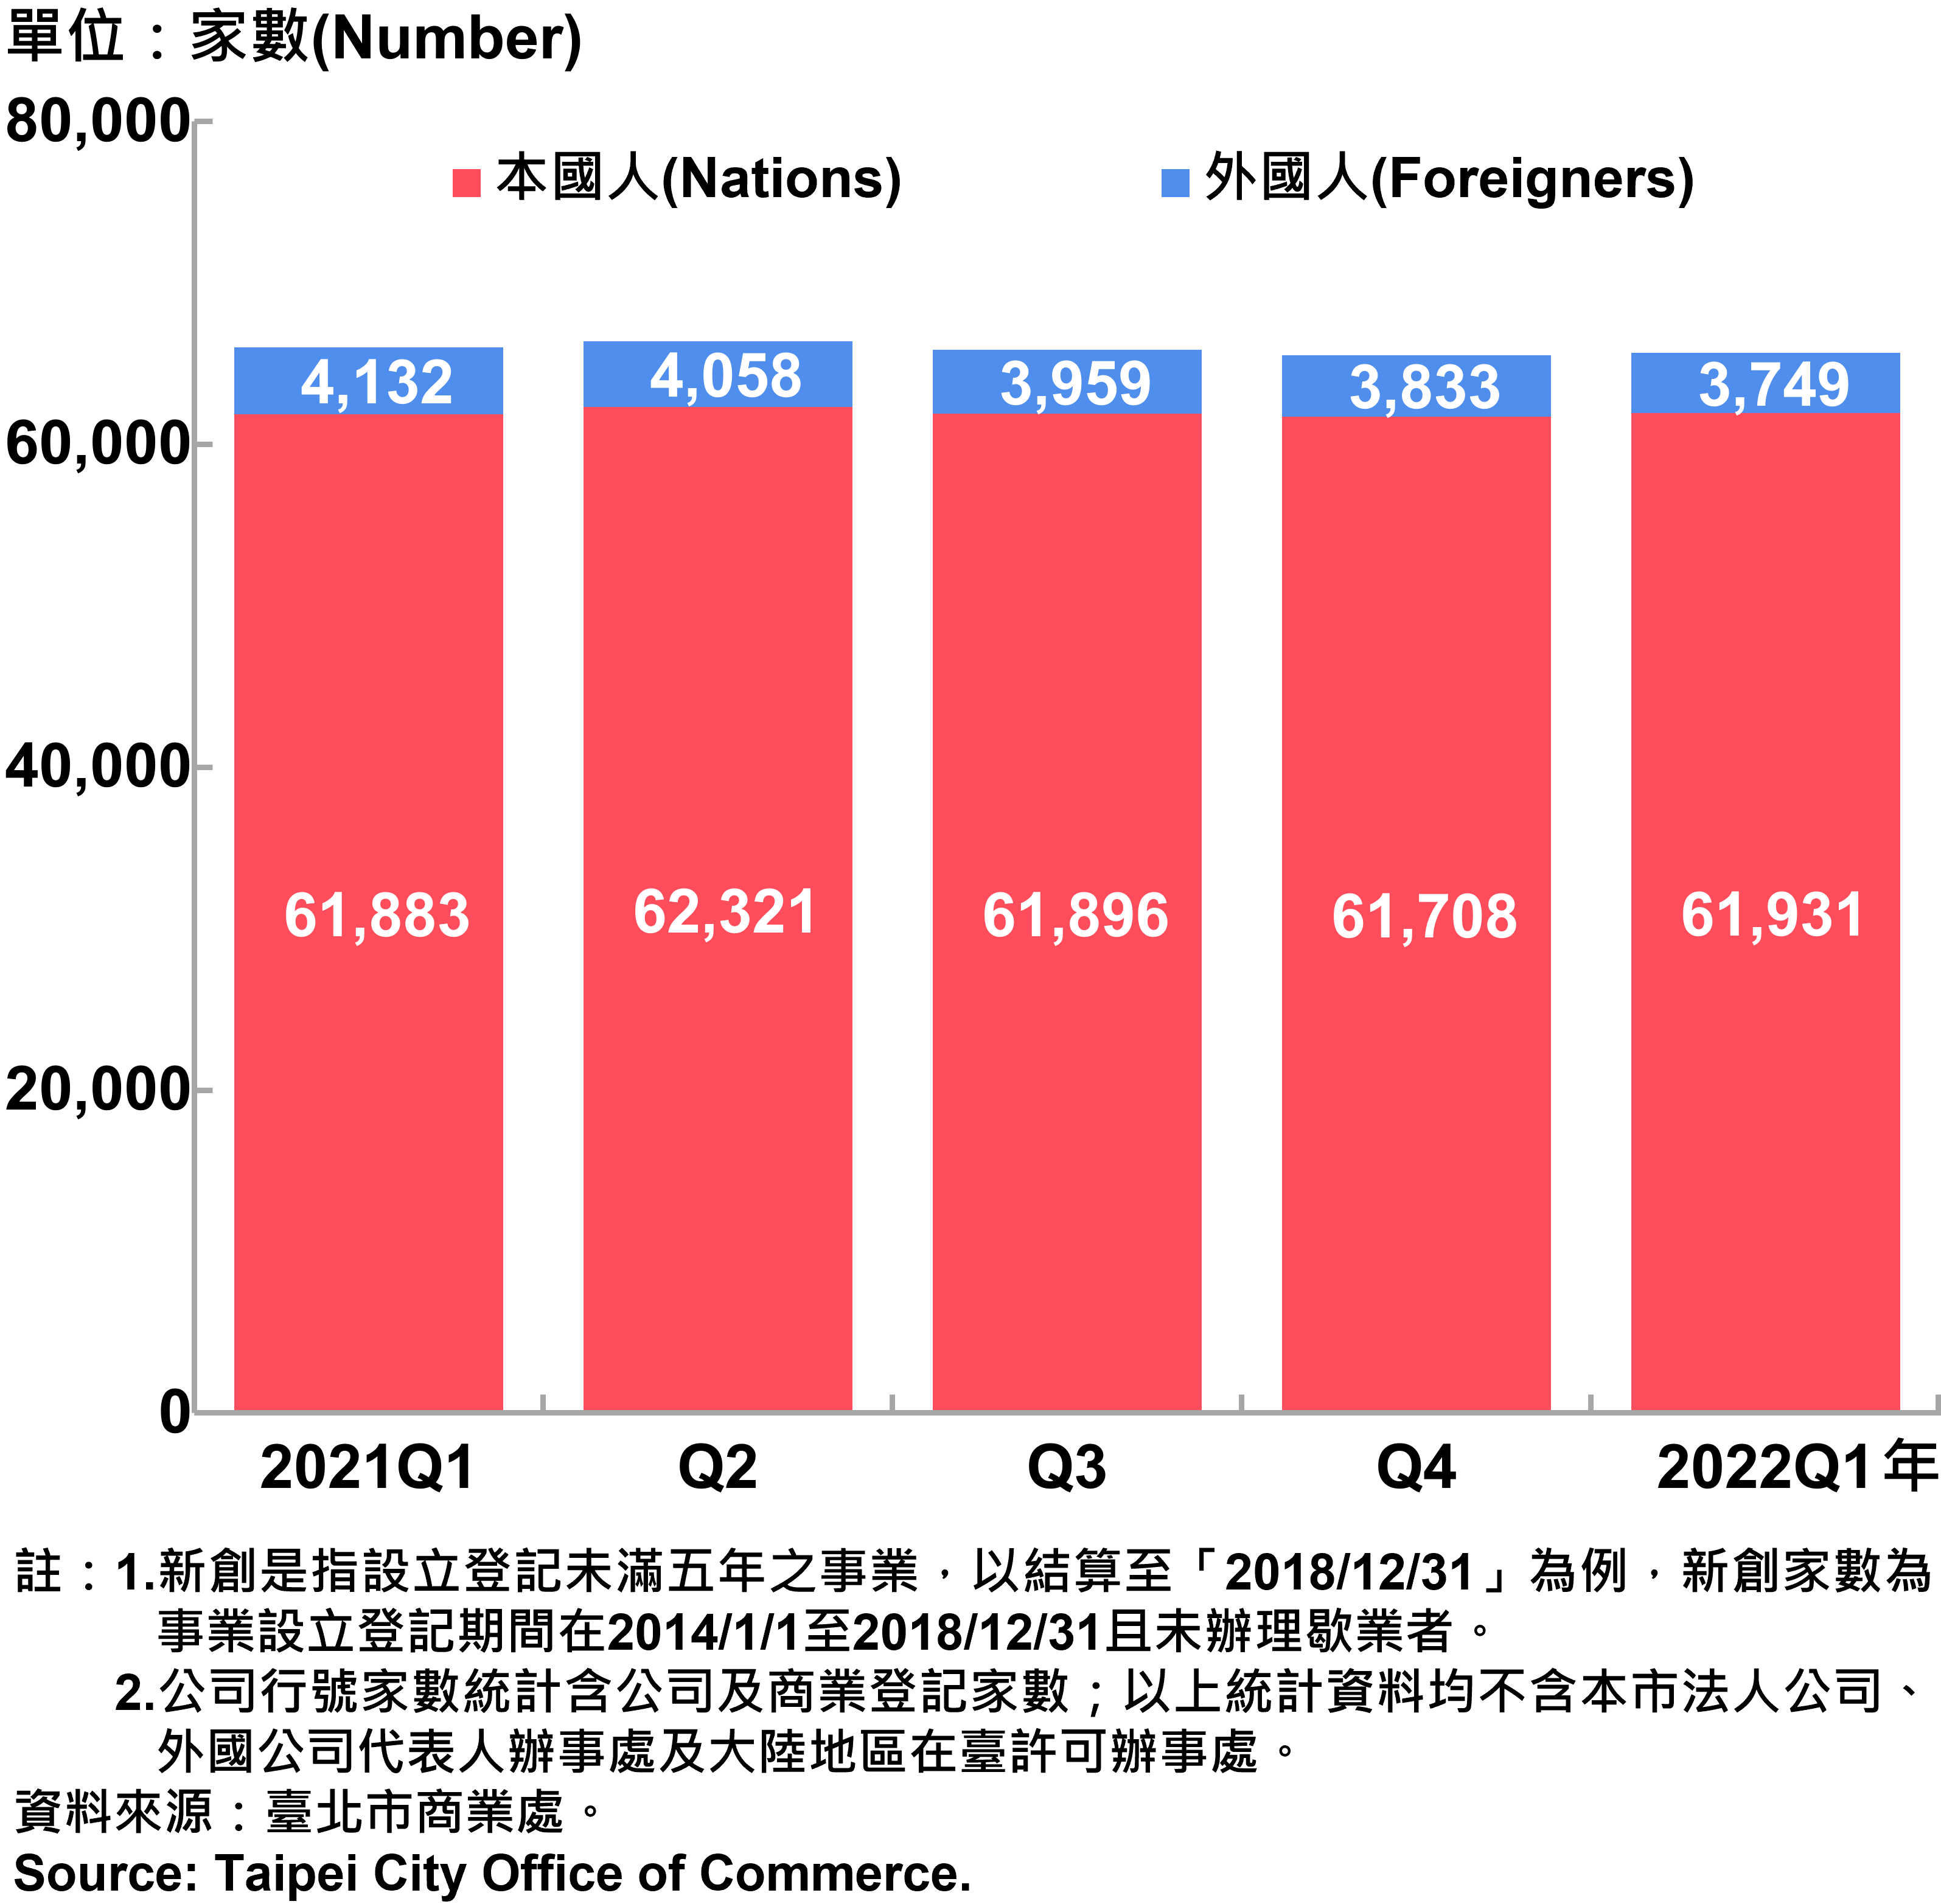 臺北市新創公司行號負責人-本國人與外國人分布情形-現存家數—2022Q1 Responsible Person of Newly Registered Companies In Taipei City by Nationality - Number of Current—2022Q1